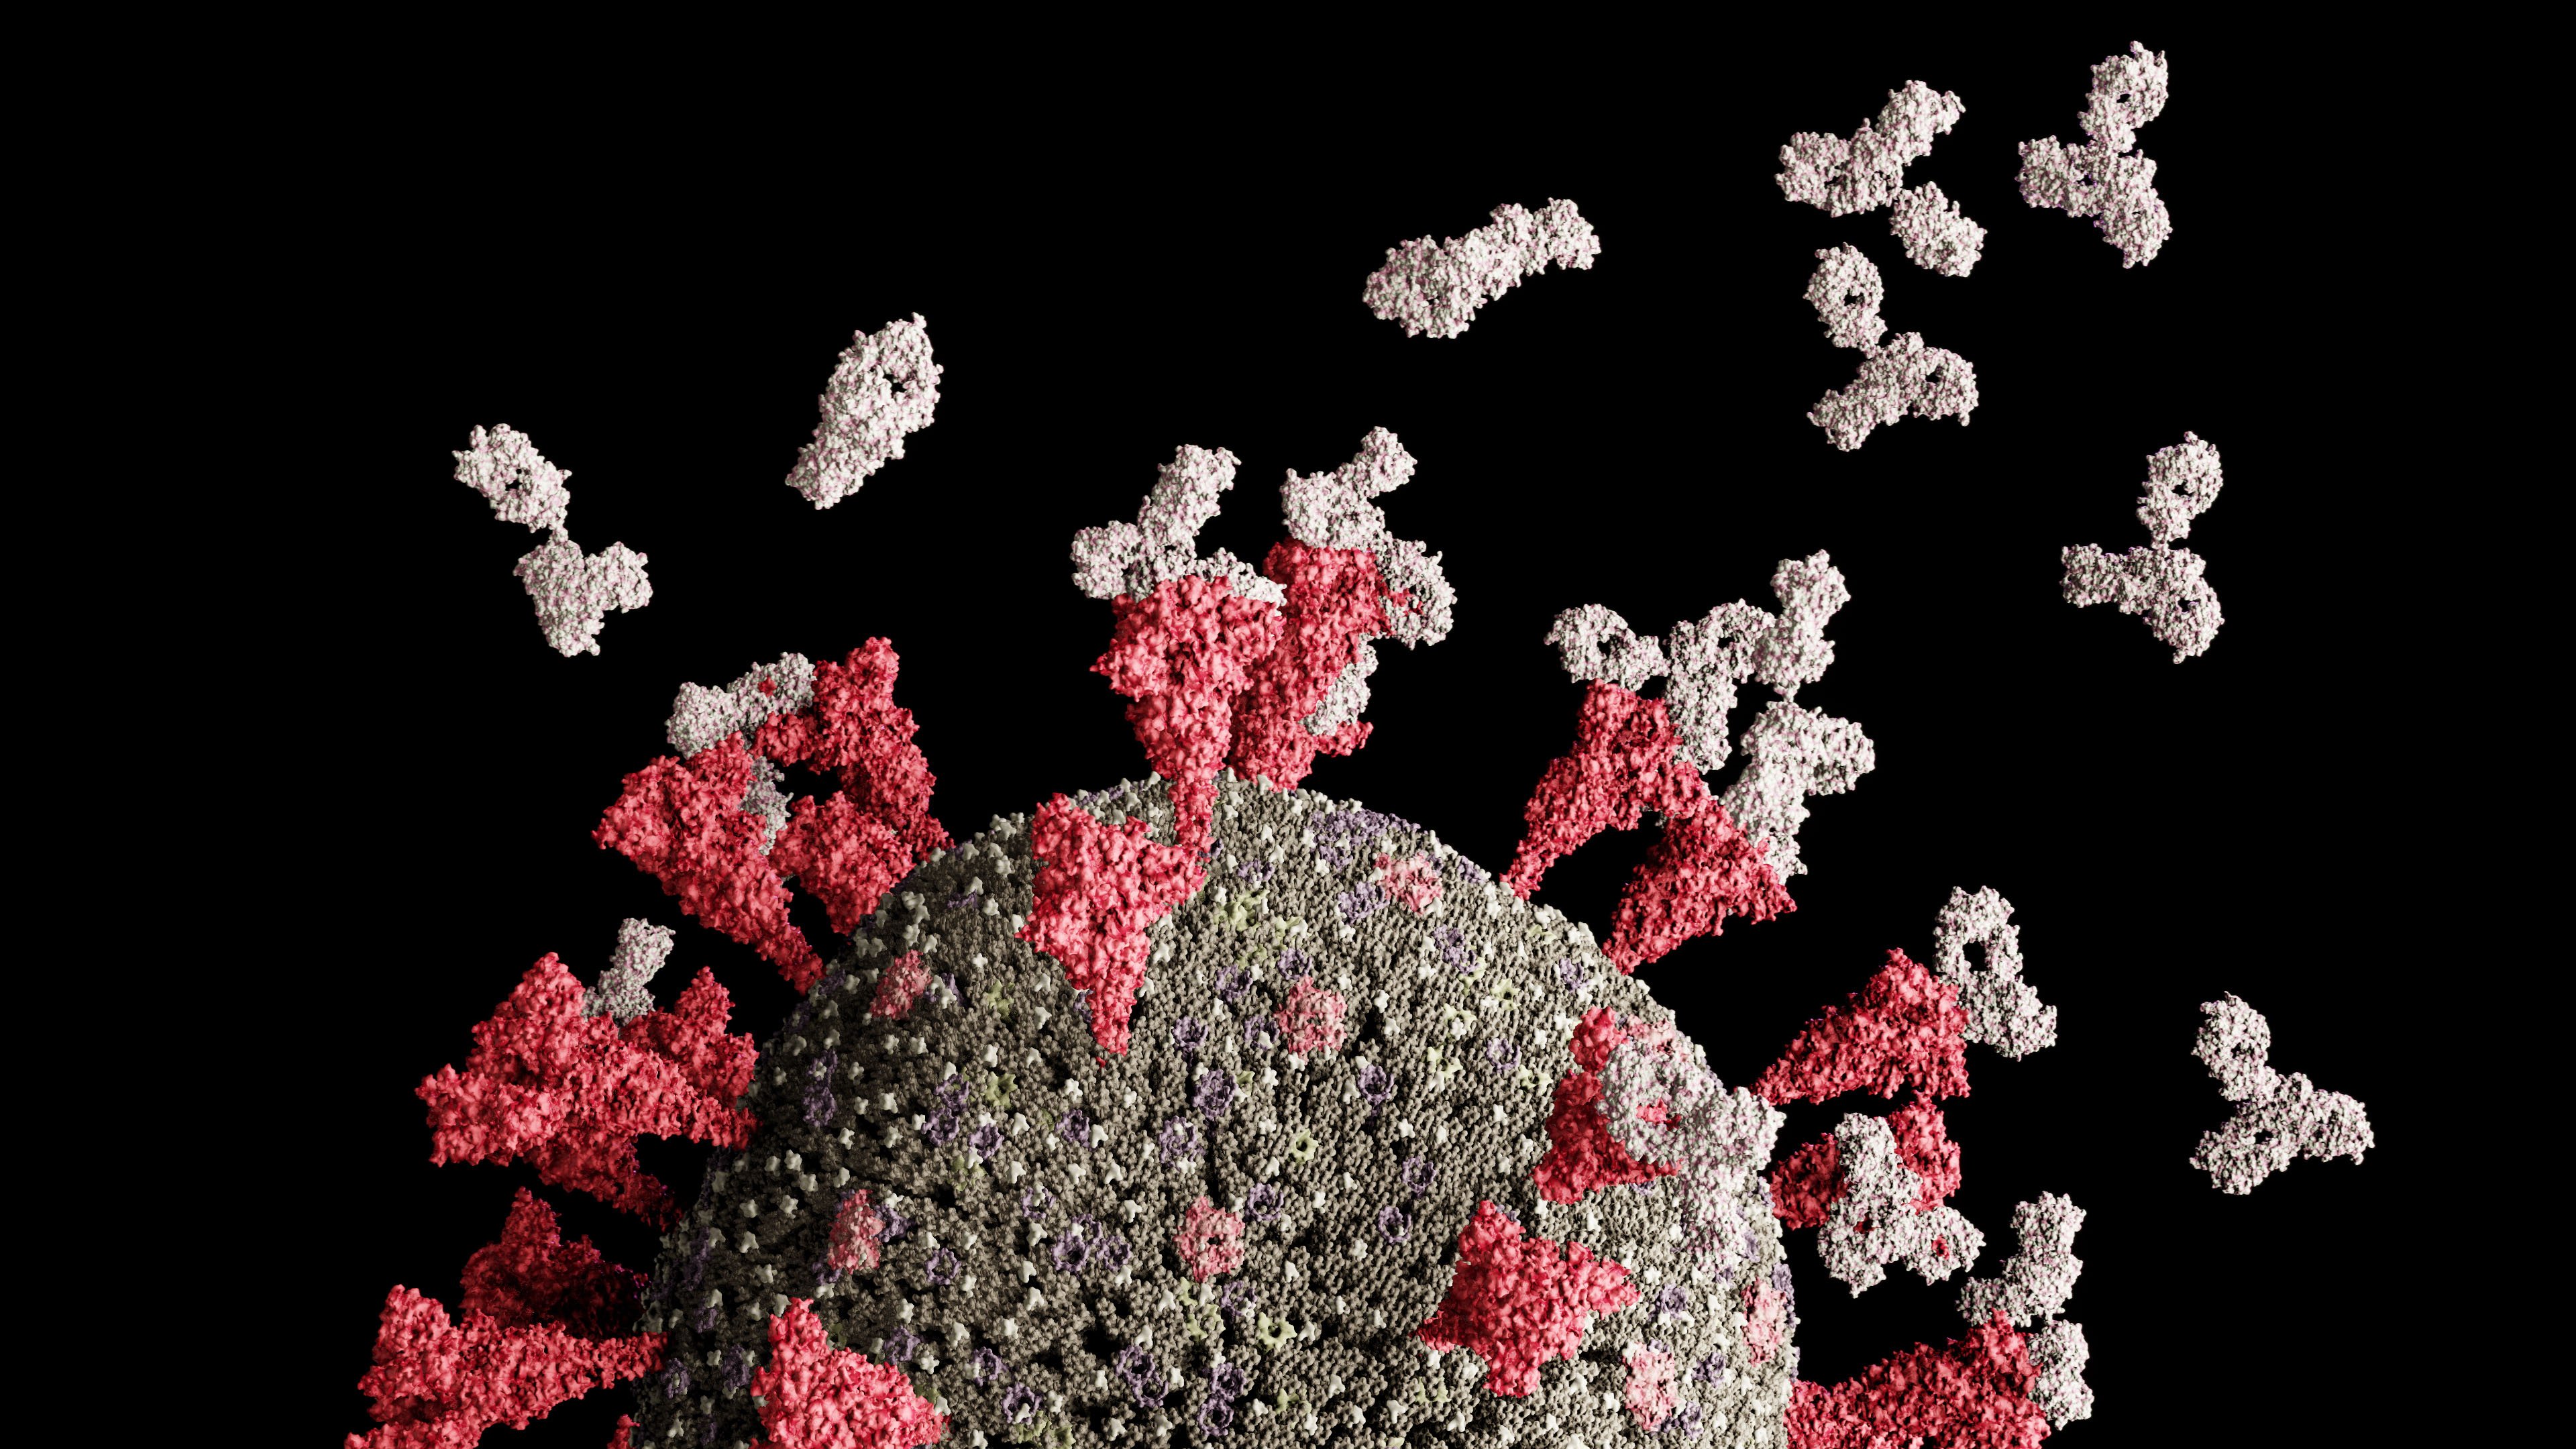 An illustration of COVID-19 coronavirus 